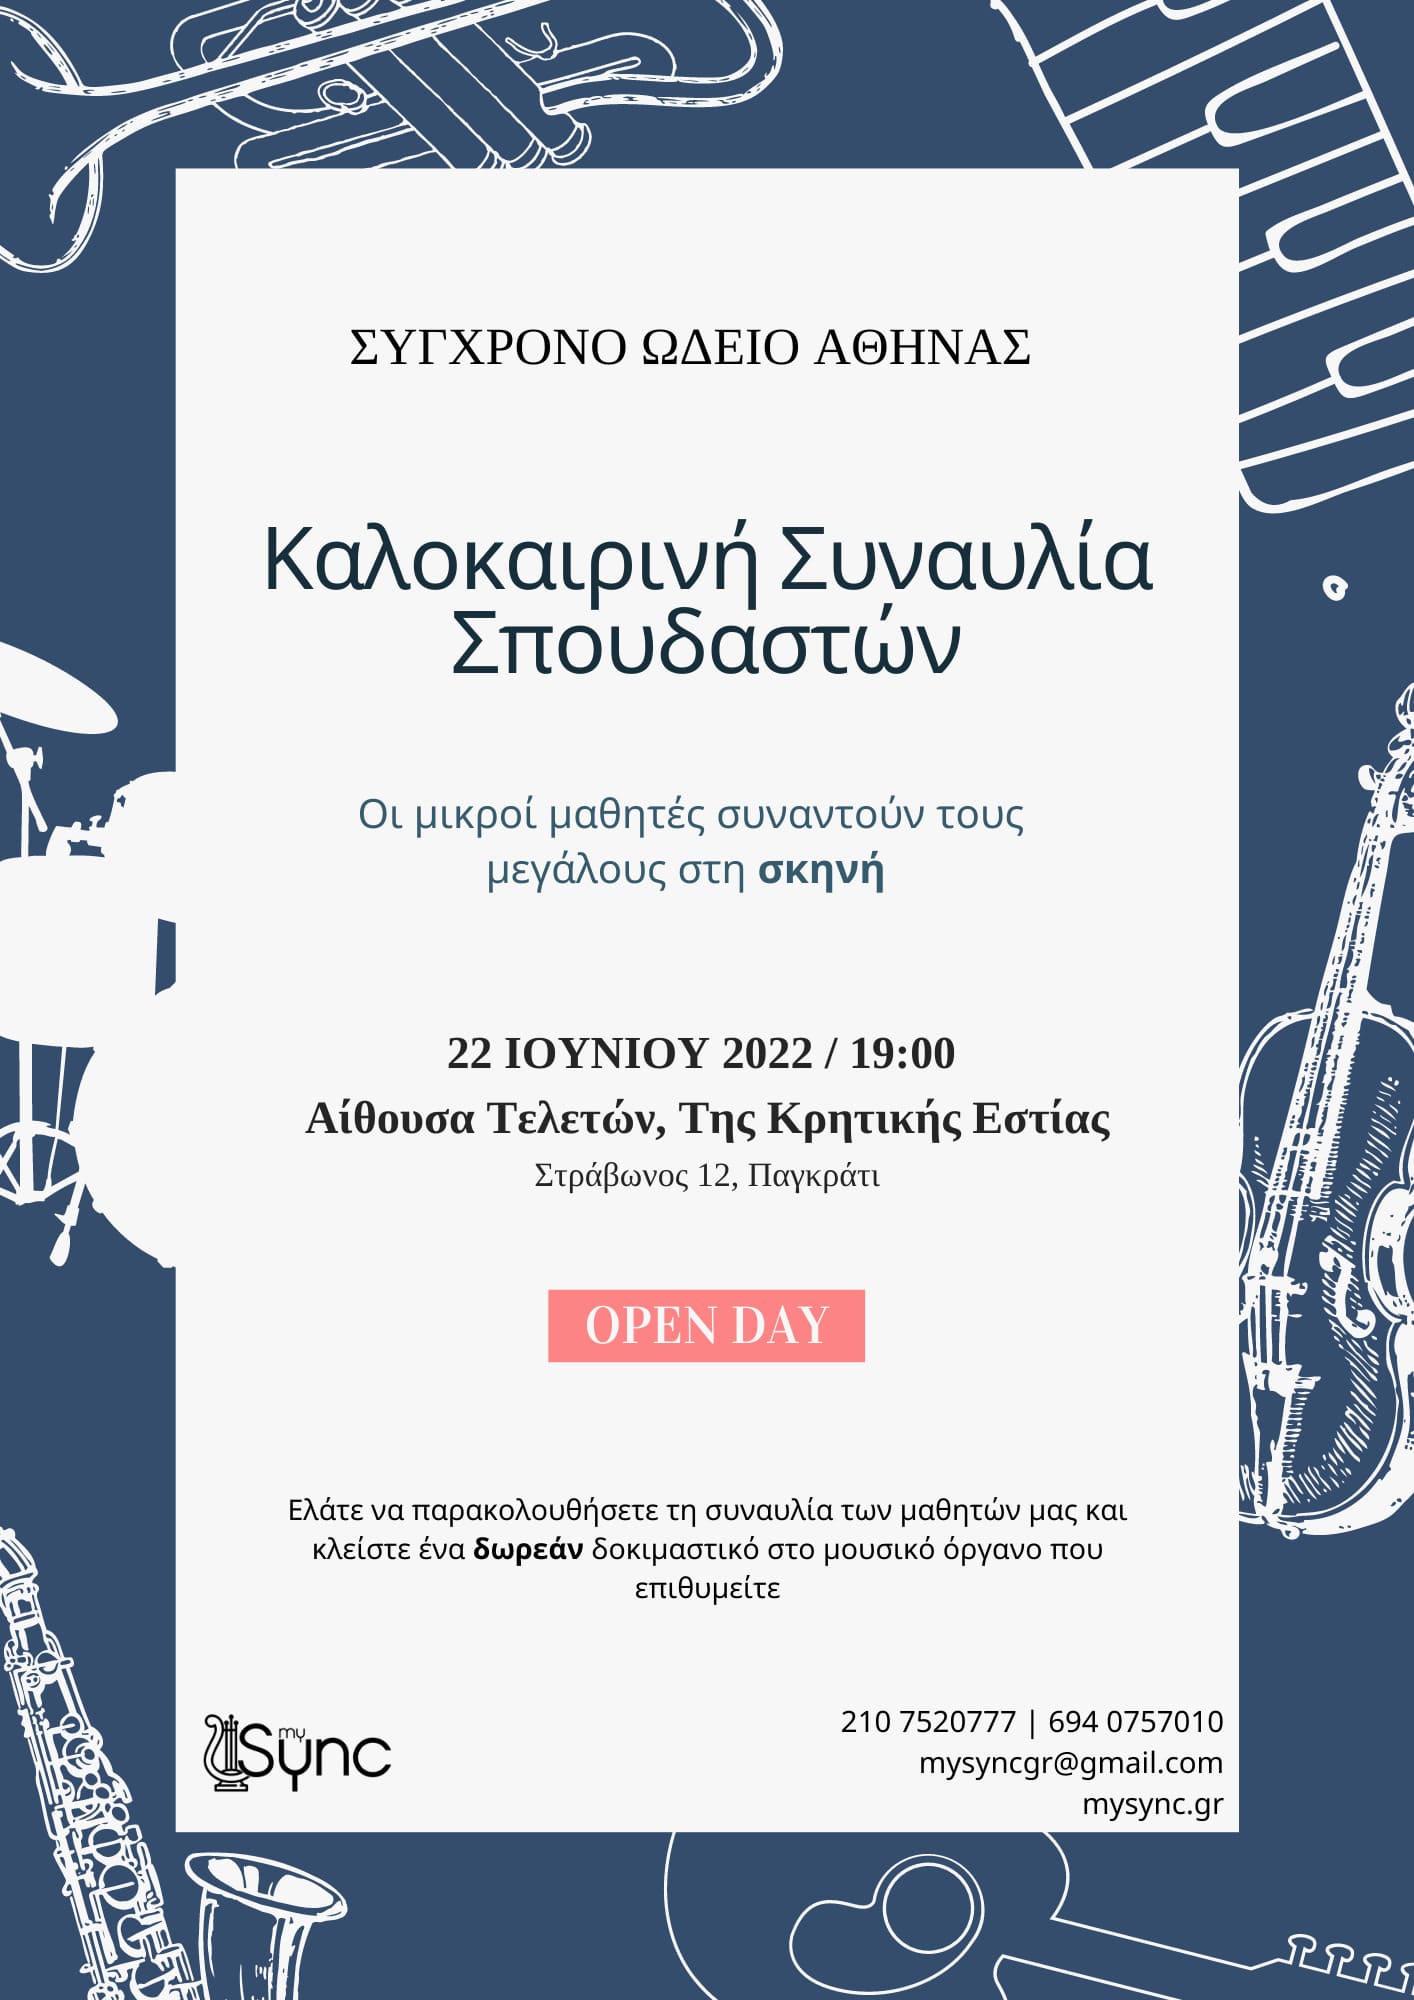 Καλοκαιρινή Συναυλία Σπουδαστών του Σύγχρονου Ωδείου Αθήνας